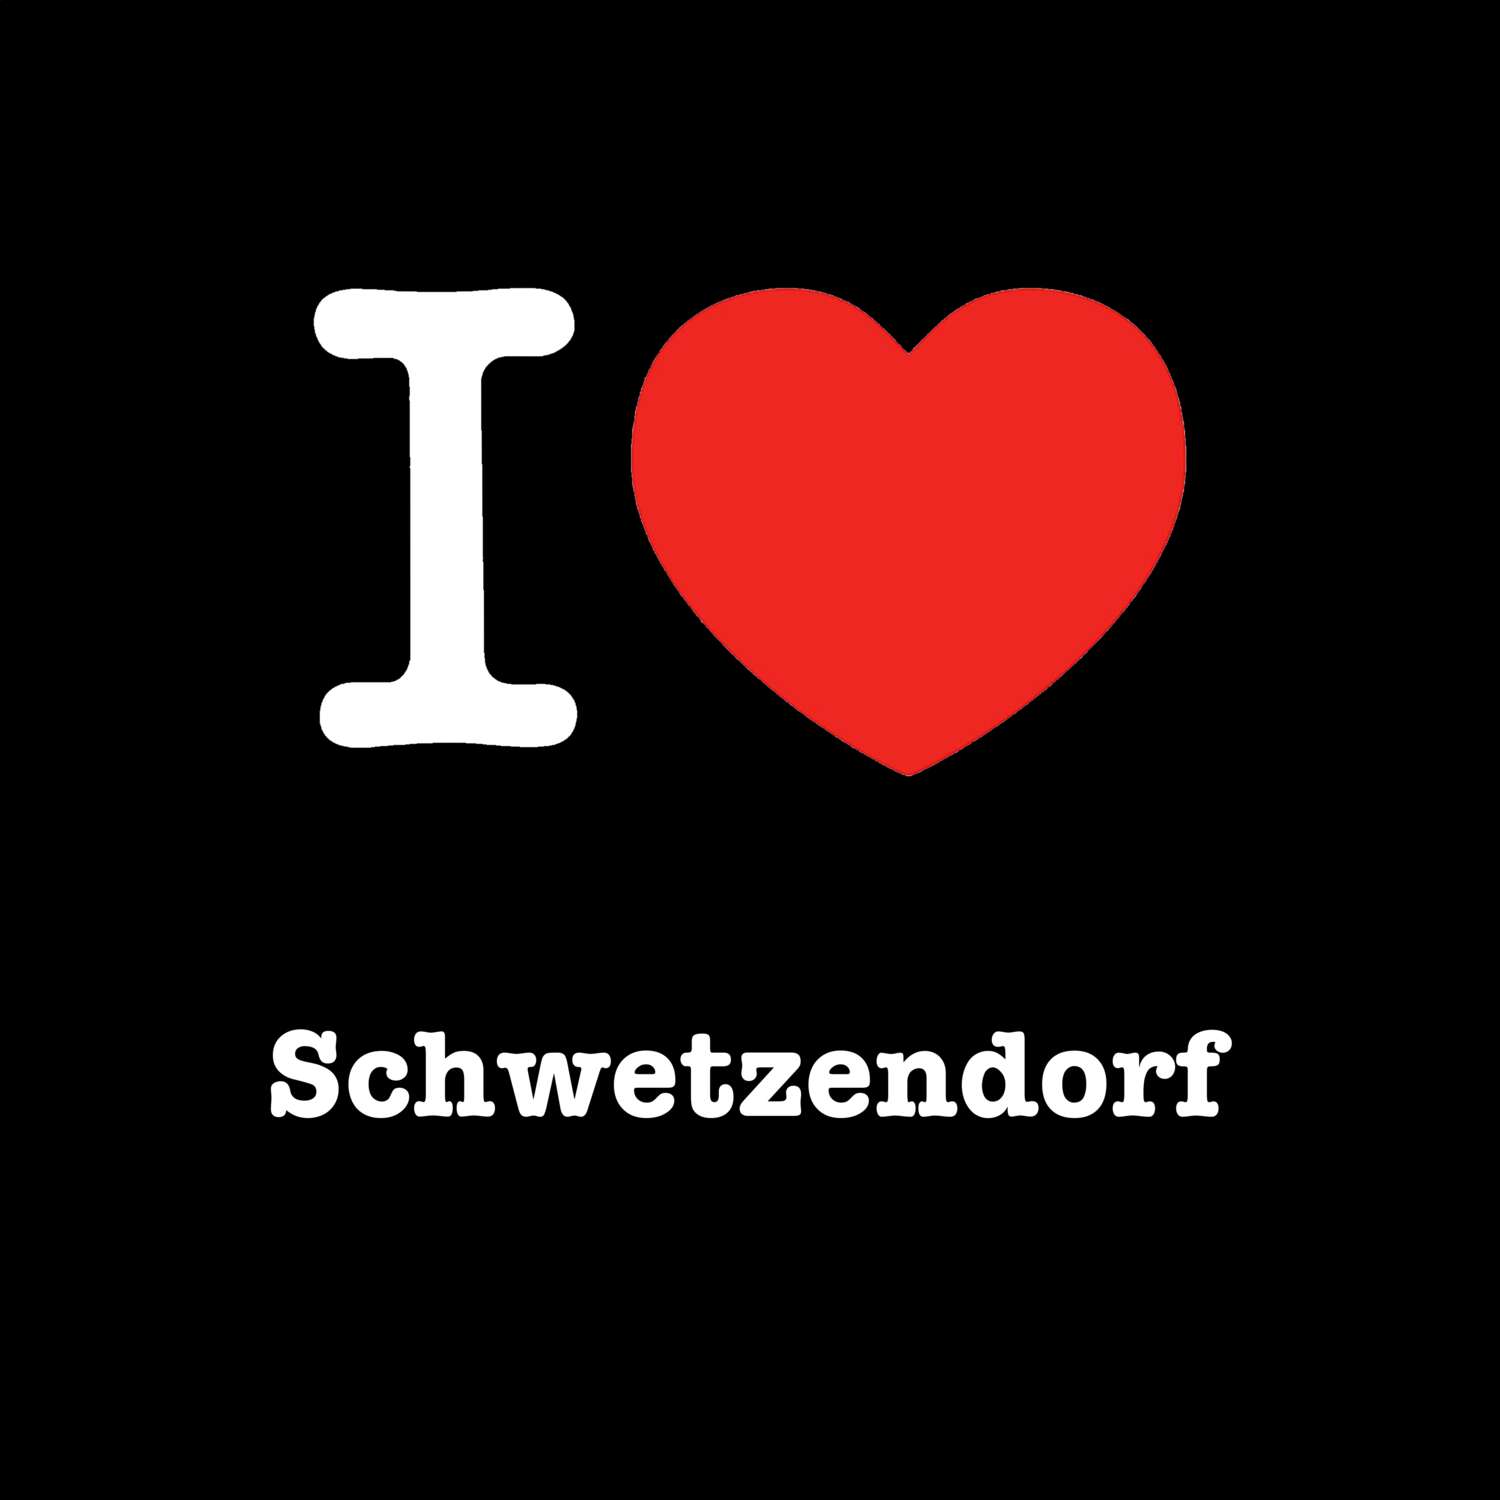 Schwetzendorf T-Shirt »I love«